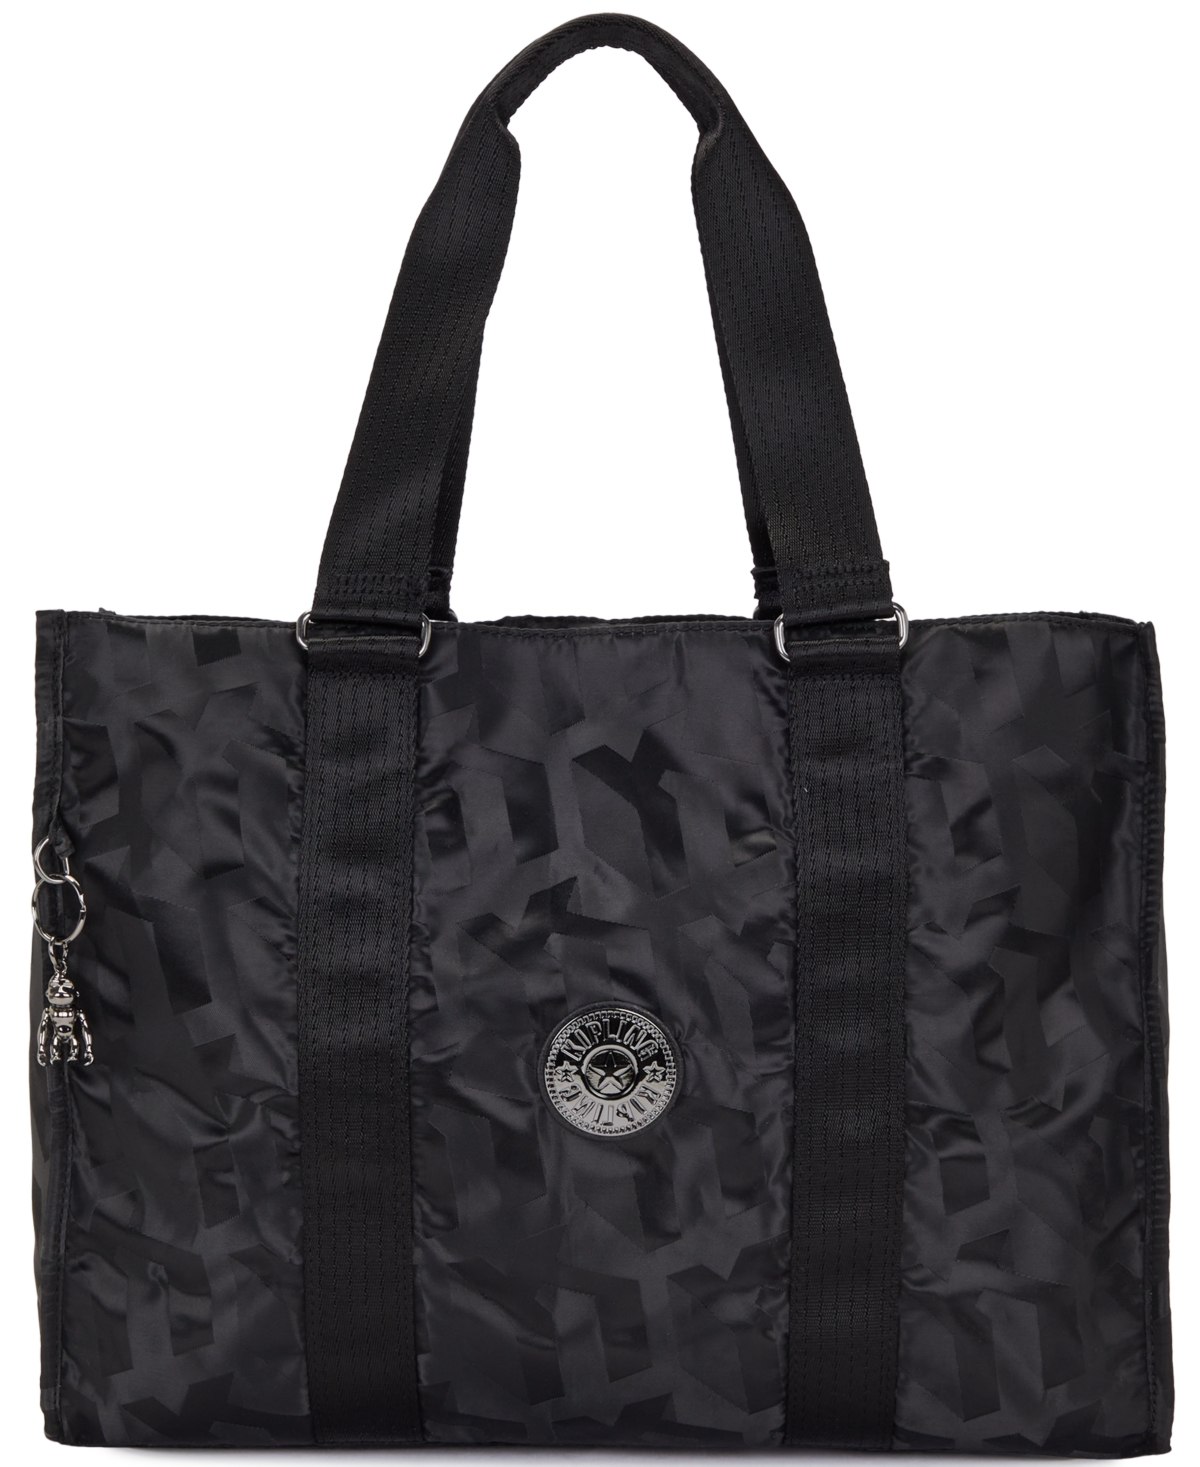 Moka Tote Bag - Black 3D Jacquard